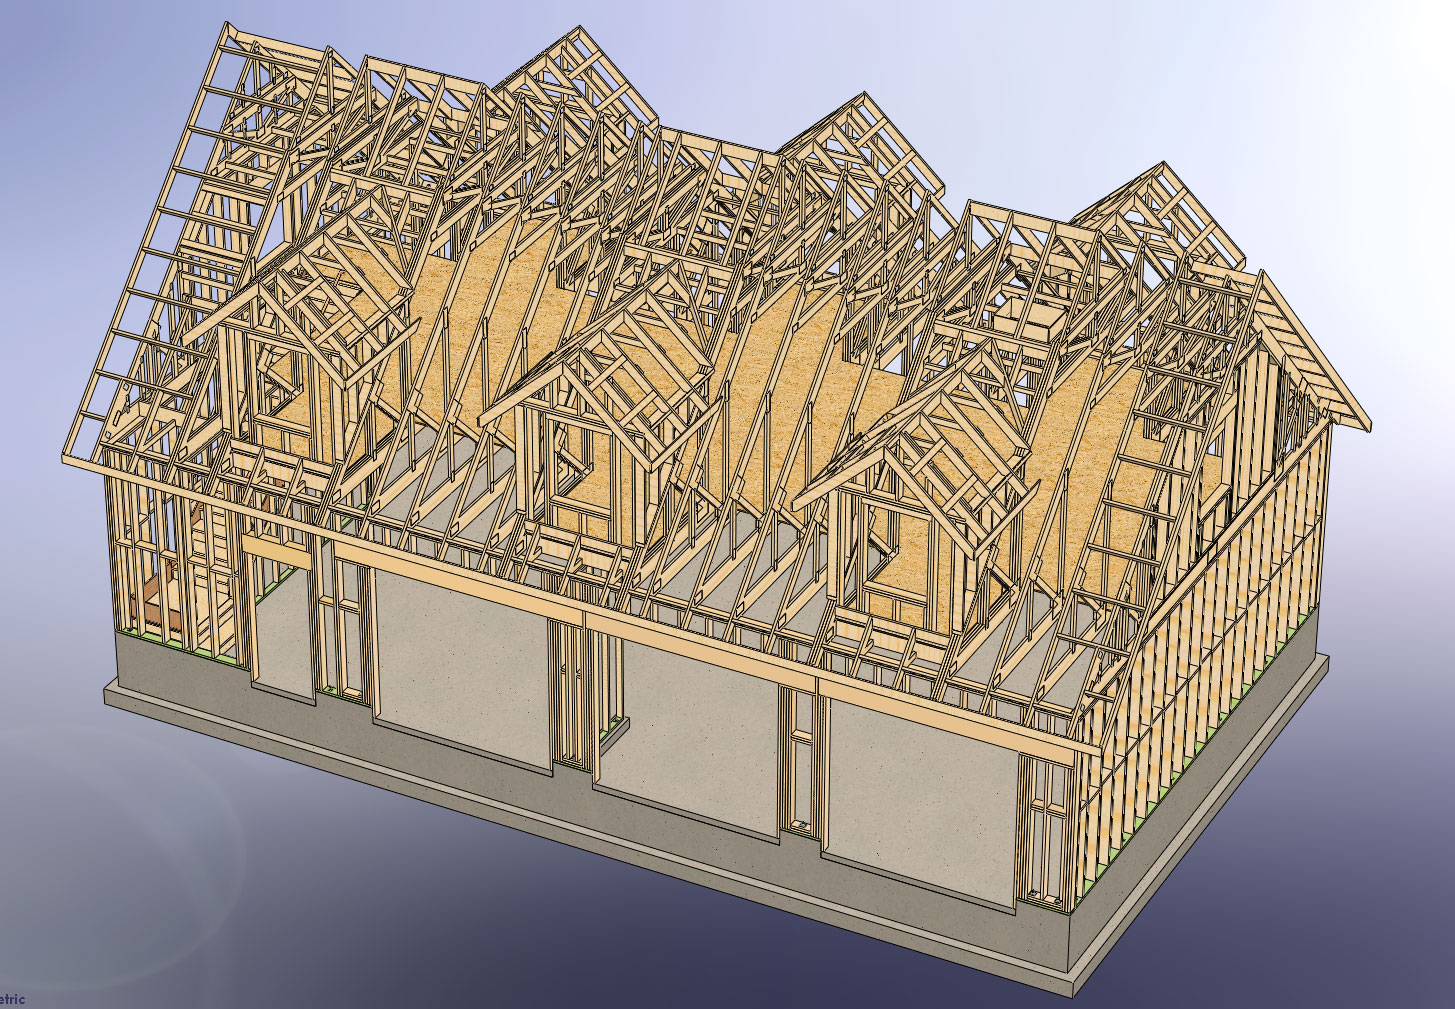  Software Plans shed dormer truss design | $)* SheD PlaN ProJecT